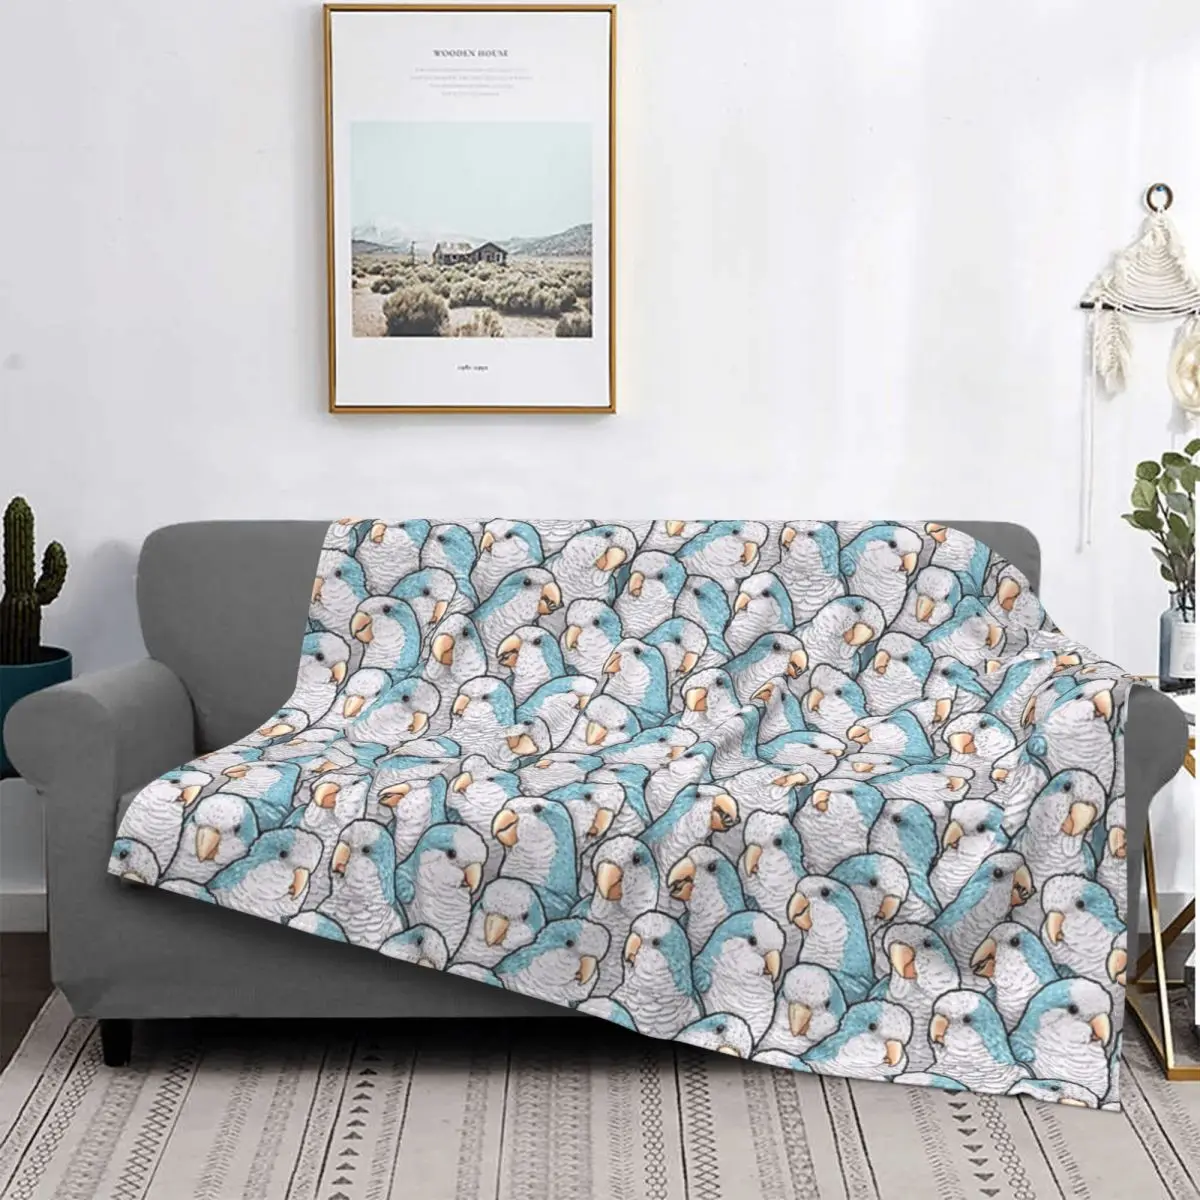 

Голубое одеяло в клетку для попугаев, покрывало для кровати, постельное белье, пушистое клетчатое милое одеяло, одеяло для малышей